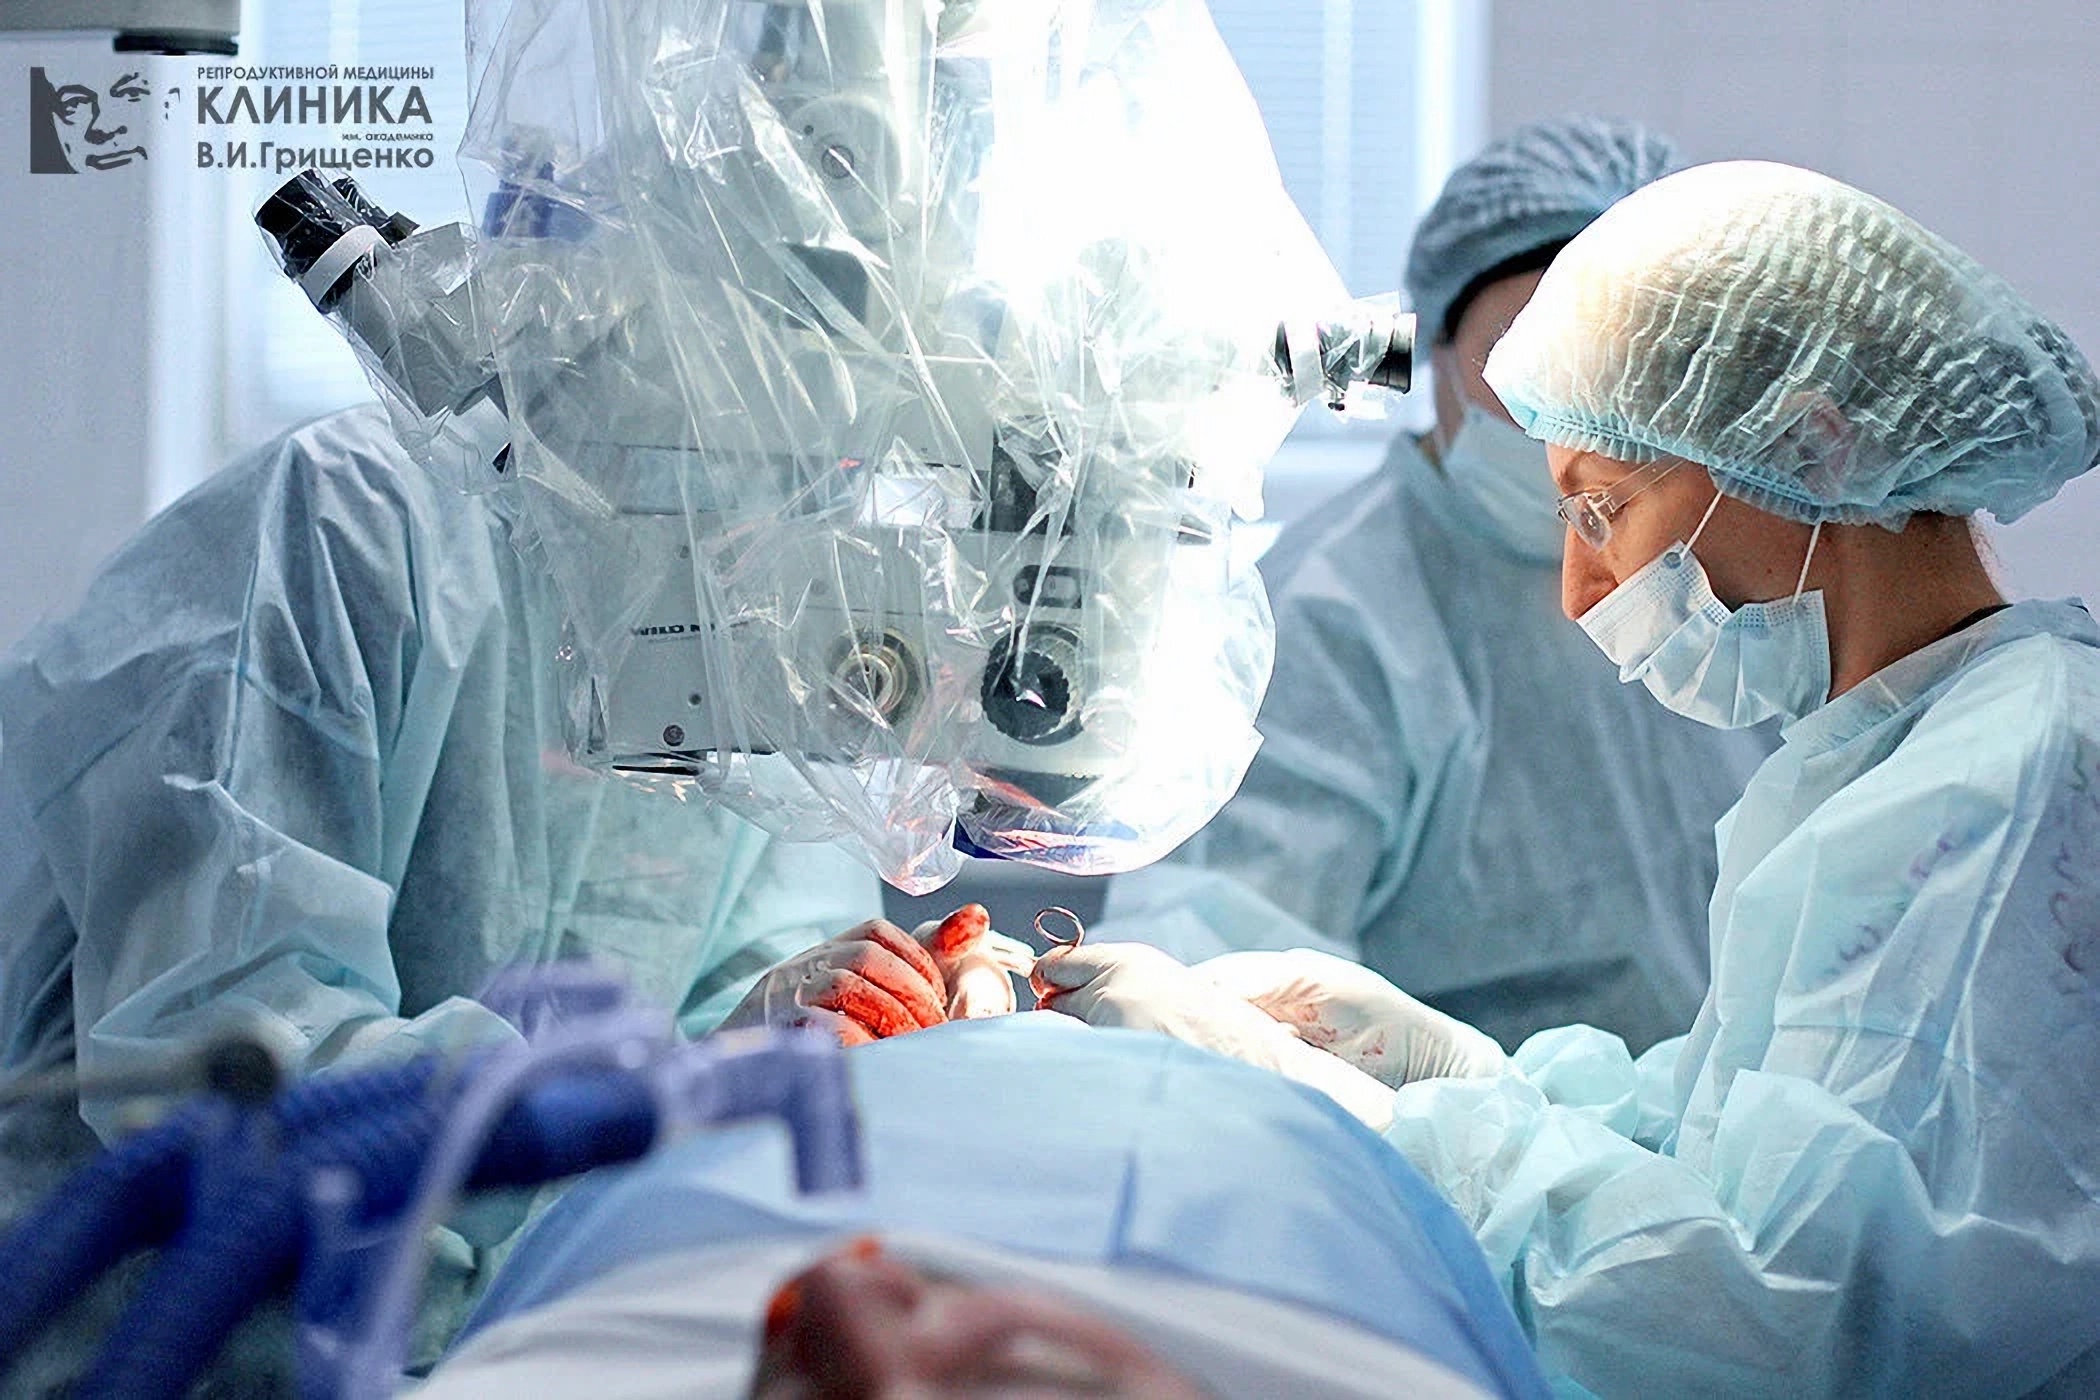 Гинекологическая операция в Клинике Грищенко Львов Украина